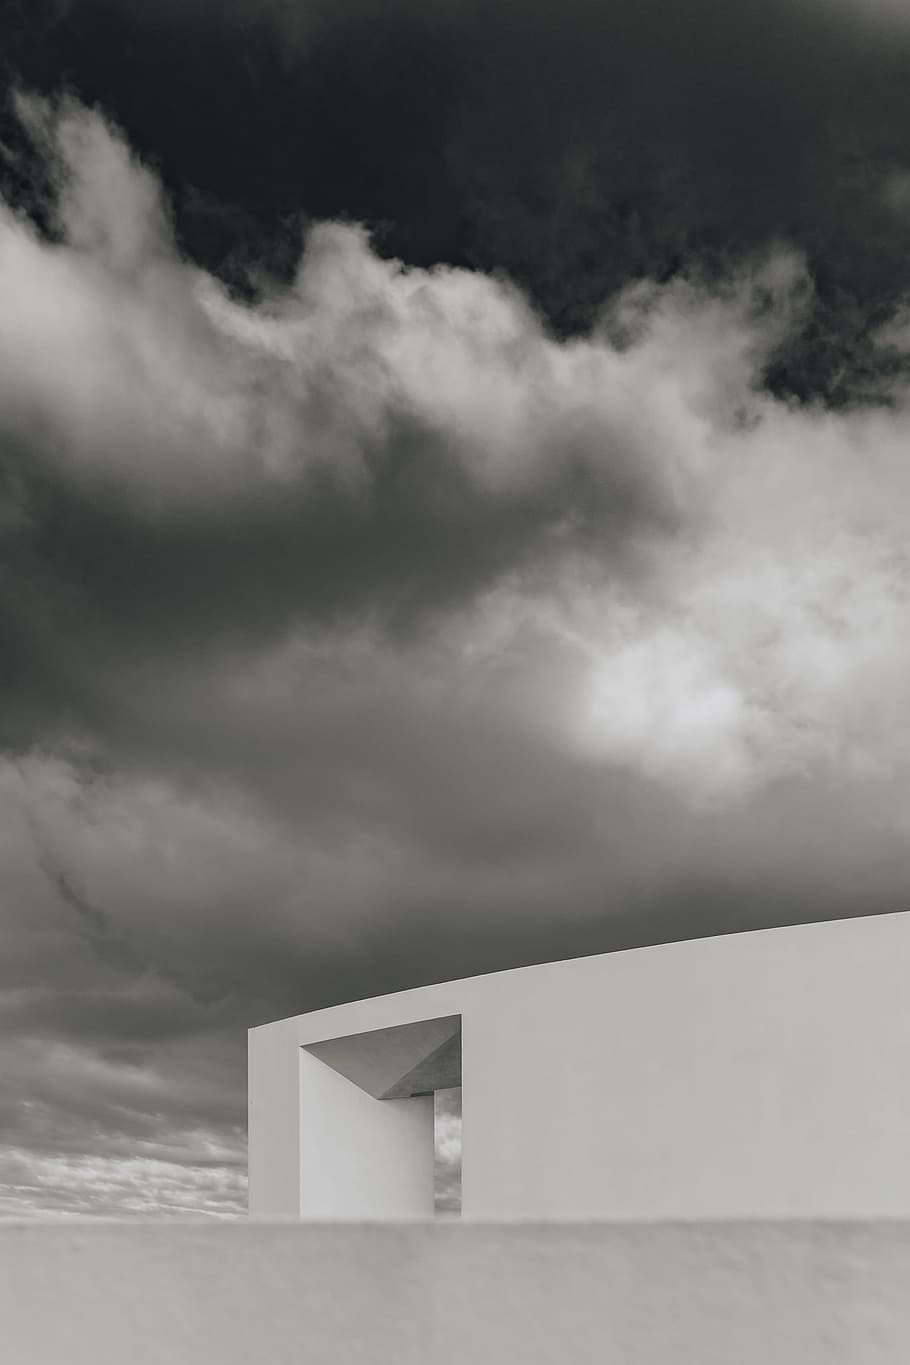 casas portuguesas contemporâneas, arquitetura, design, fachada, casa, portugal, algarve, nuvem - céu, céu, estrutura construída